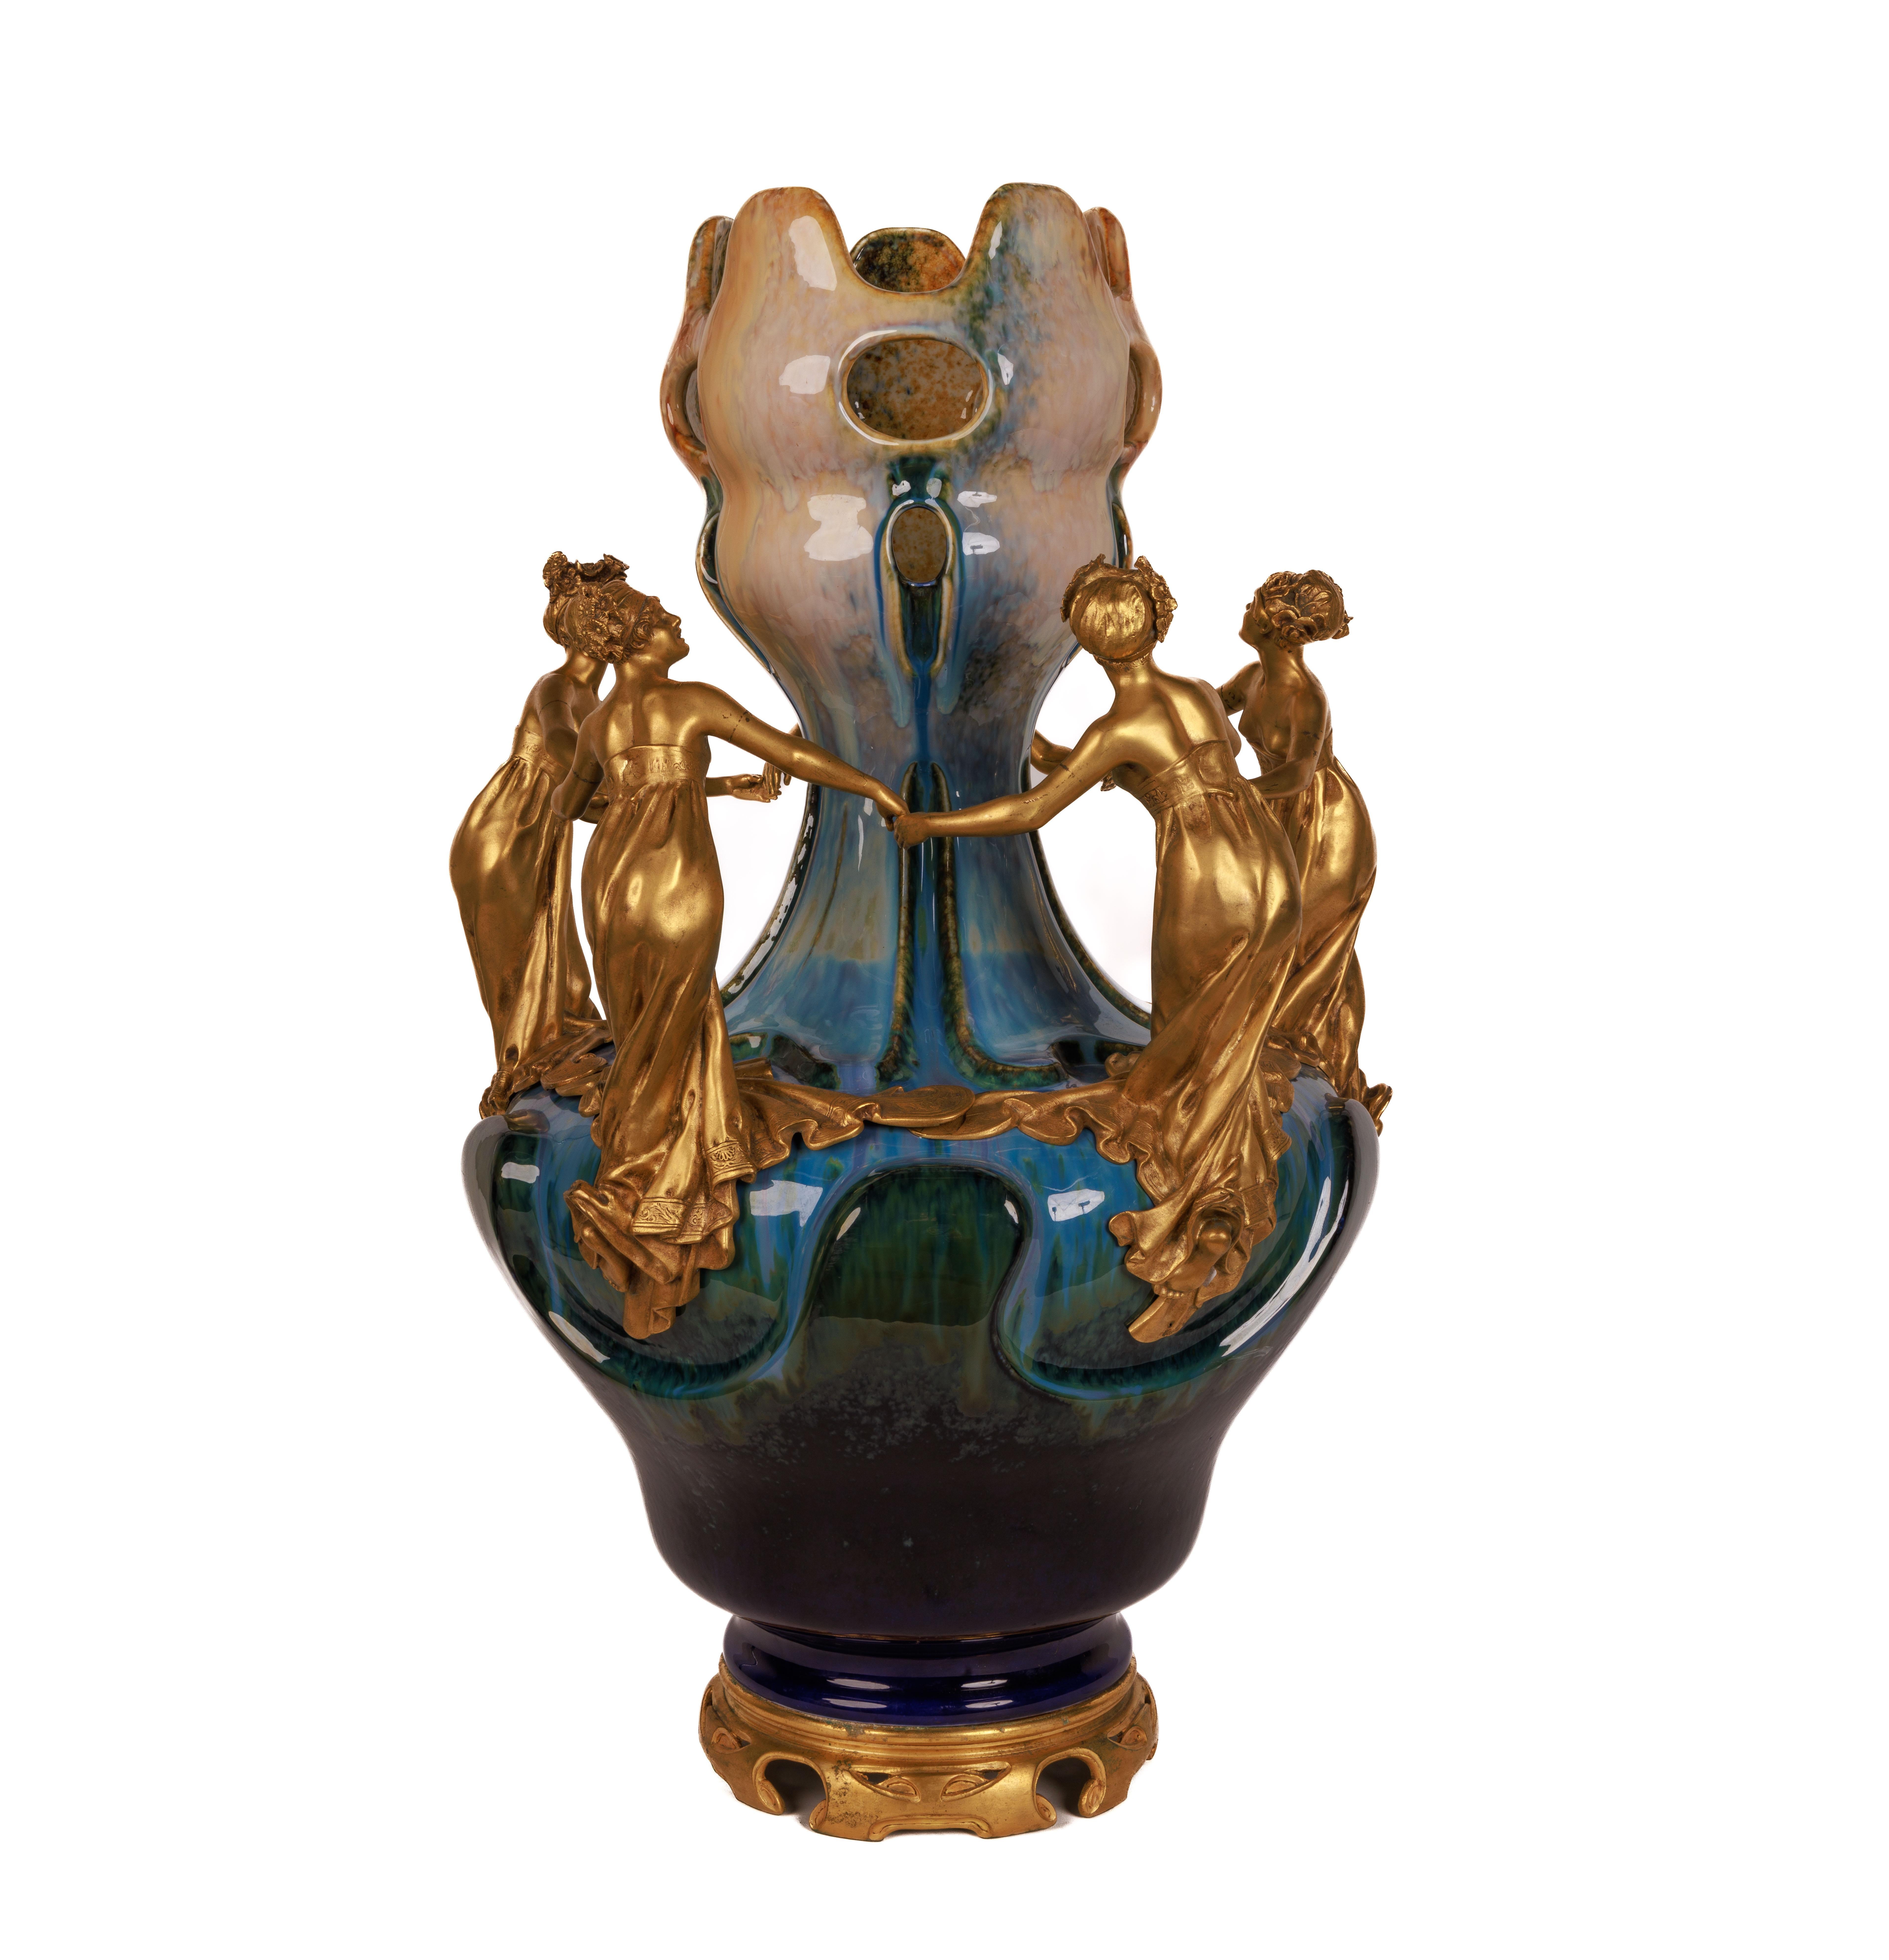 Bedeutende und monumentale Jugendstilvase mit Ormolu-Fassung aus Keramik, um 1895

Diese bedeutende und monumentale Vase wurde Ende des 19. Jahrhunderts von vier verschiedenen Künstlern geschaffen:

 Alphonse Adolphe Lamarre, Franzose, 1837 - 1912